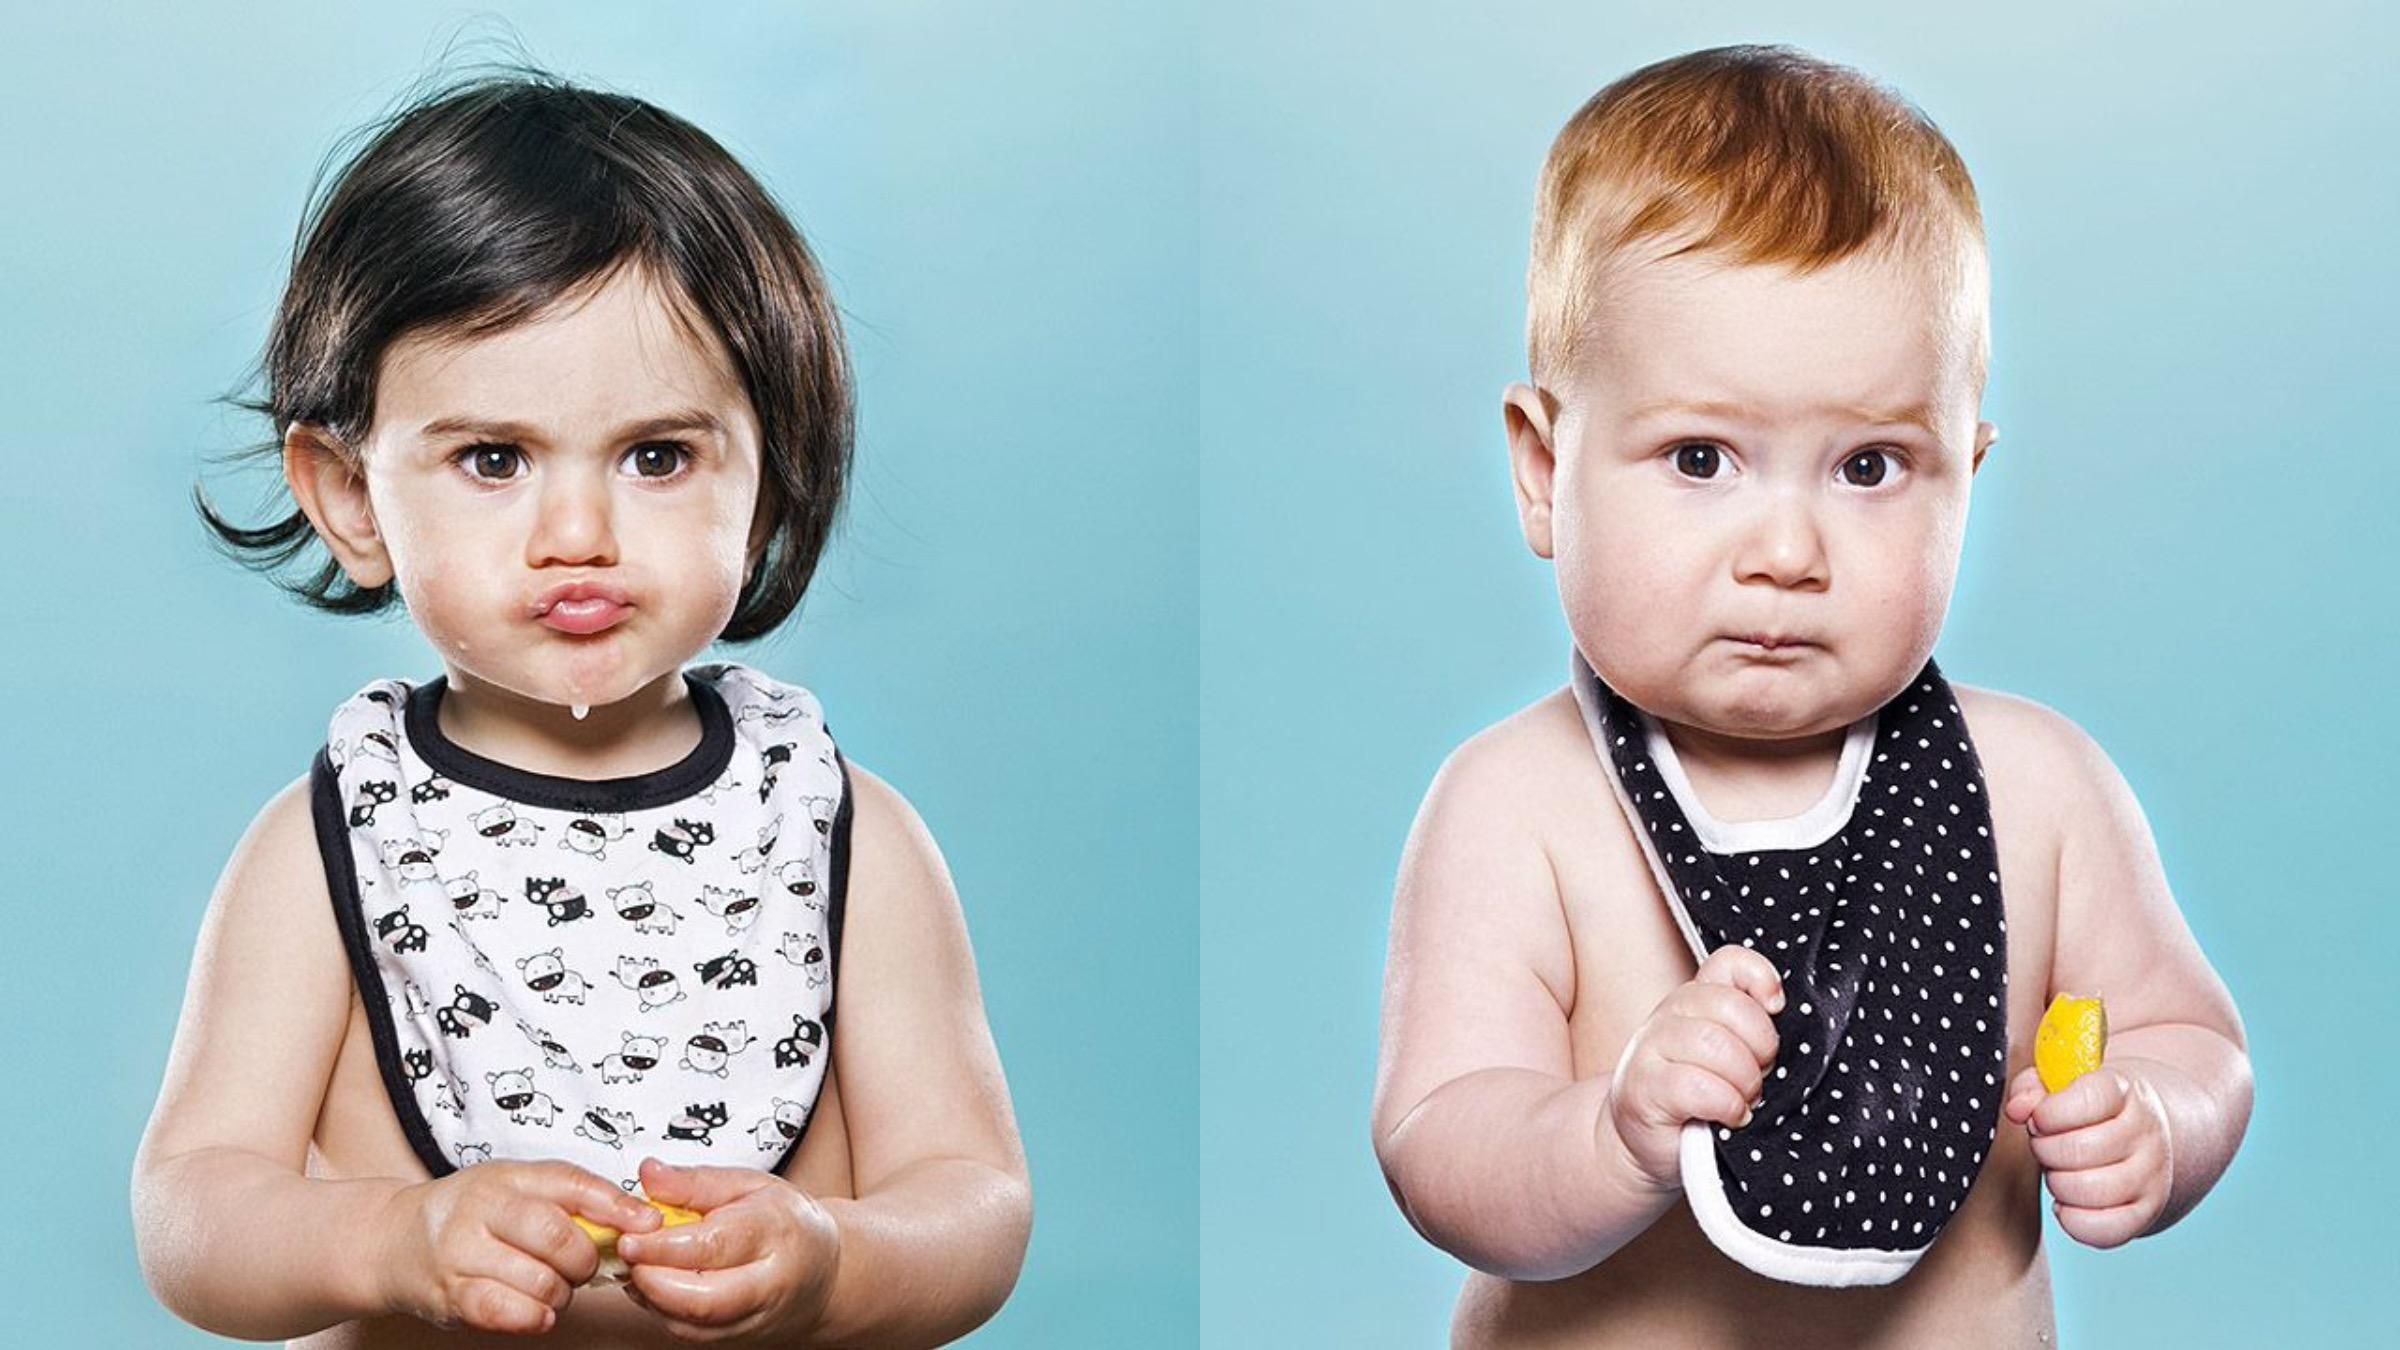 Діти вперше у житті спробували лимон: фото кумедної реакції